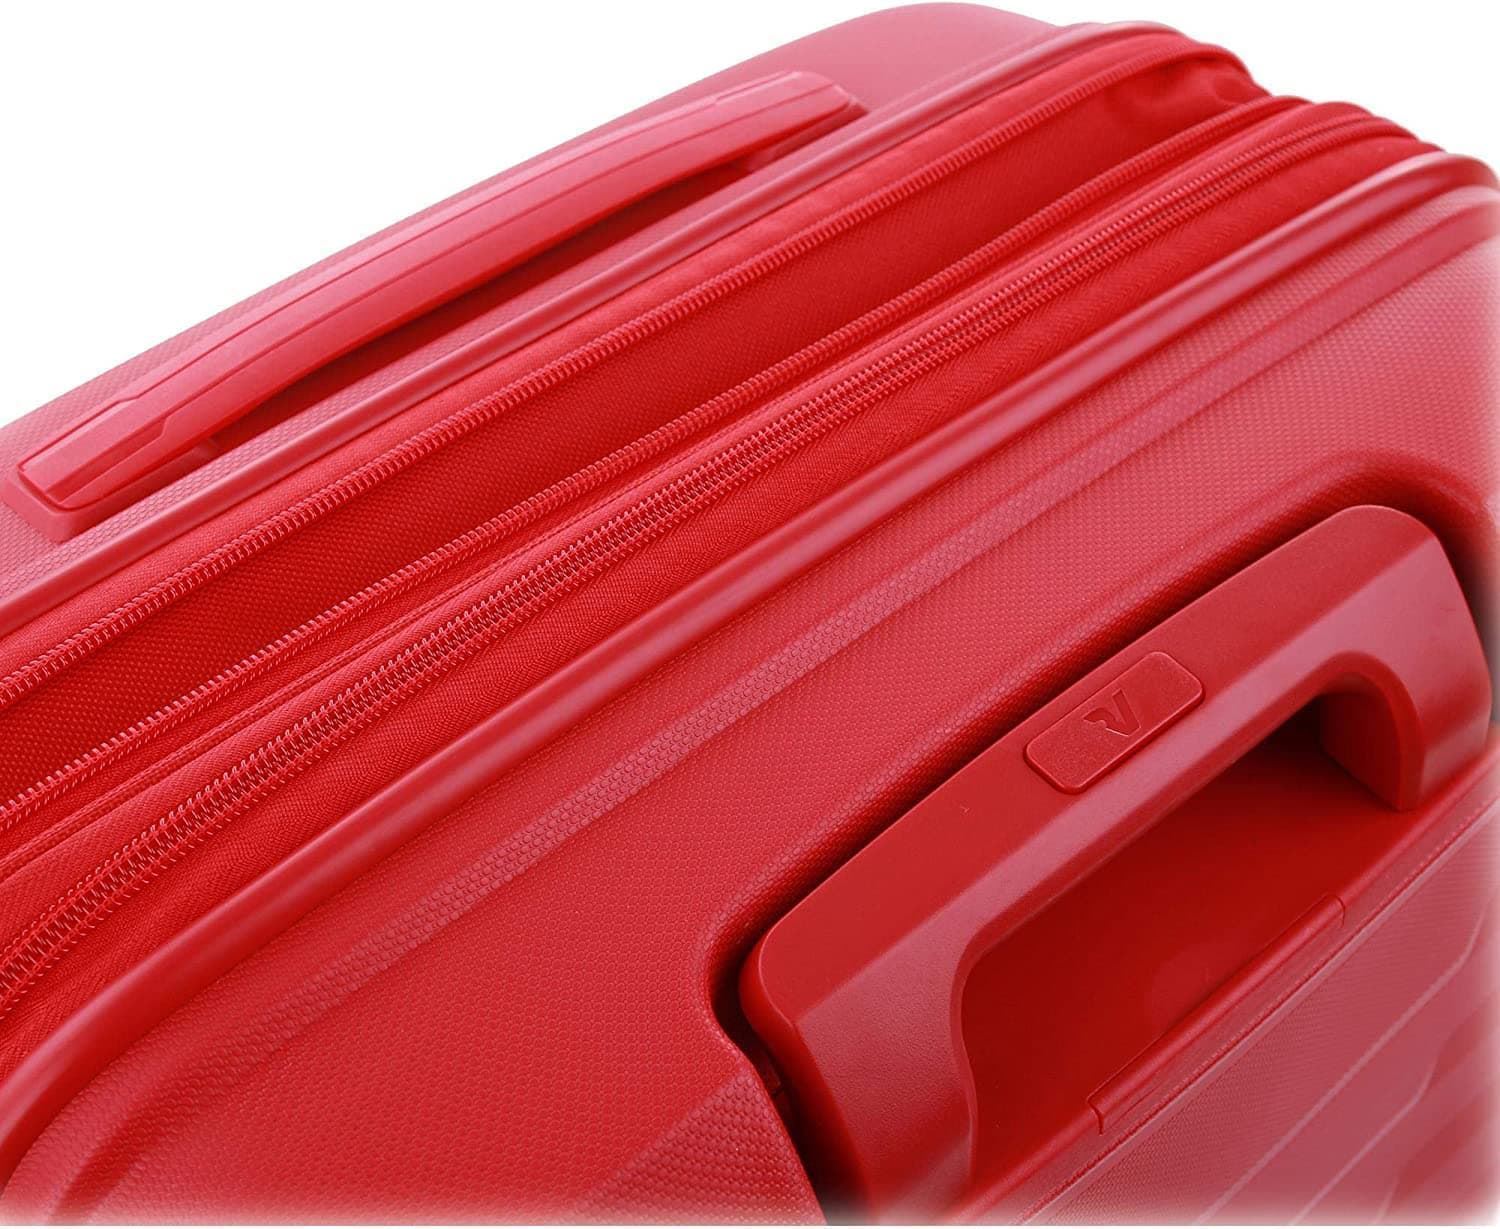 Roncato Maleta Mediana Rigida Skyline Expandible color Rojo Garantia 5 años - Imagen 9